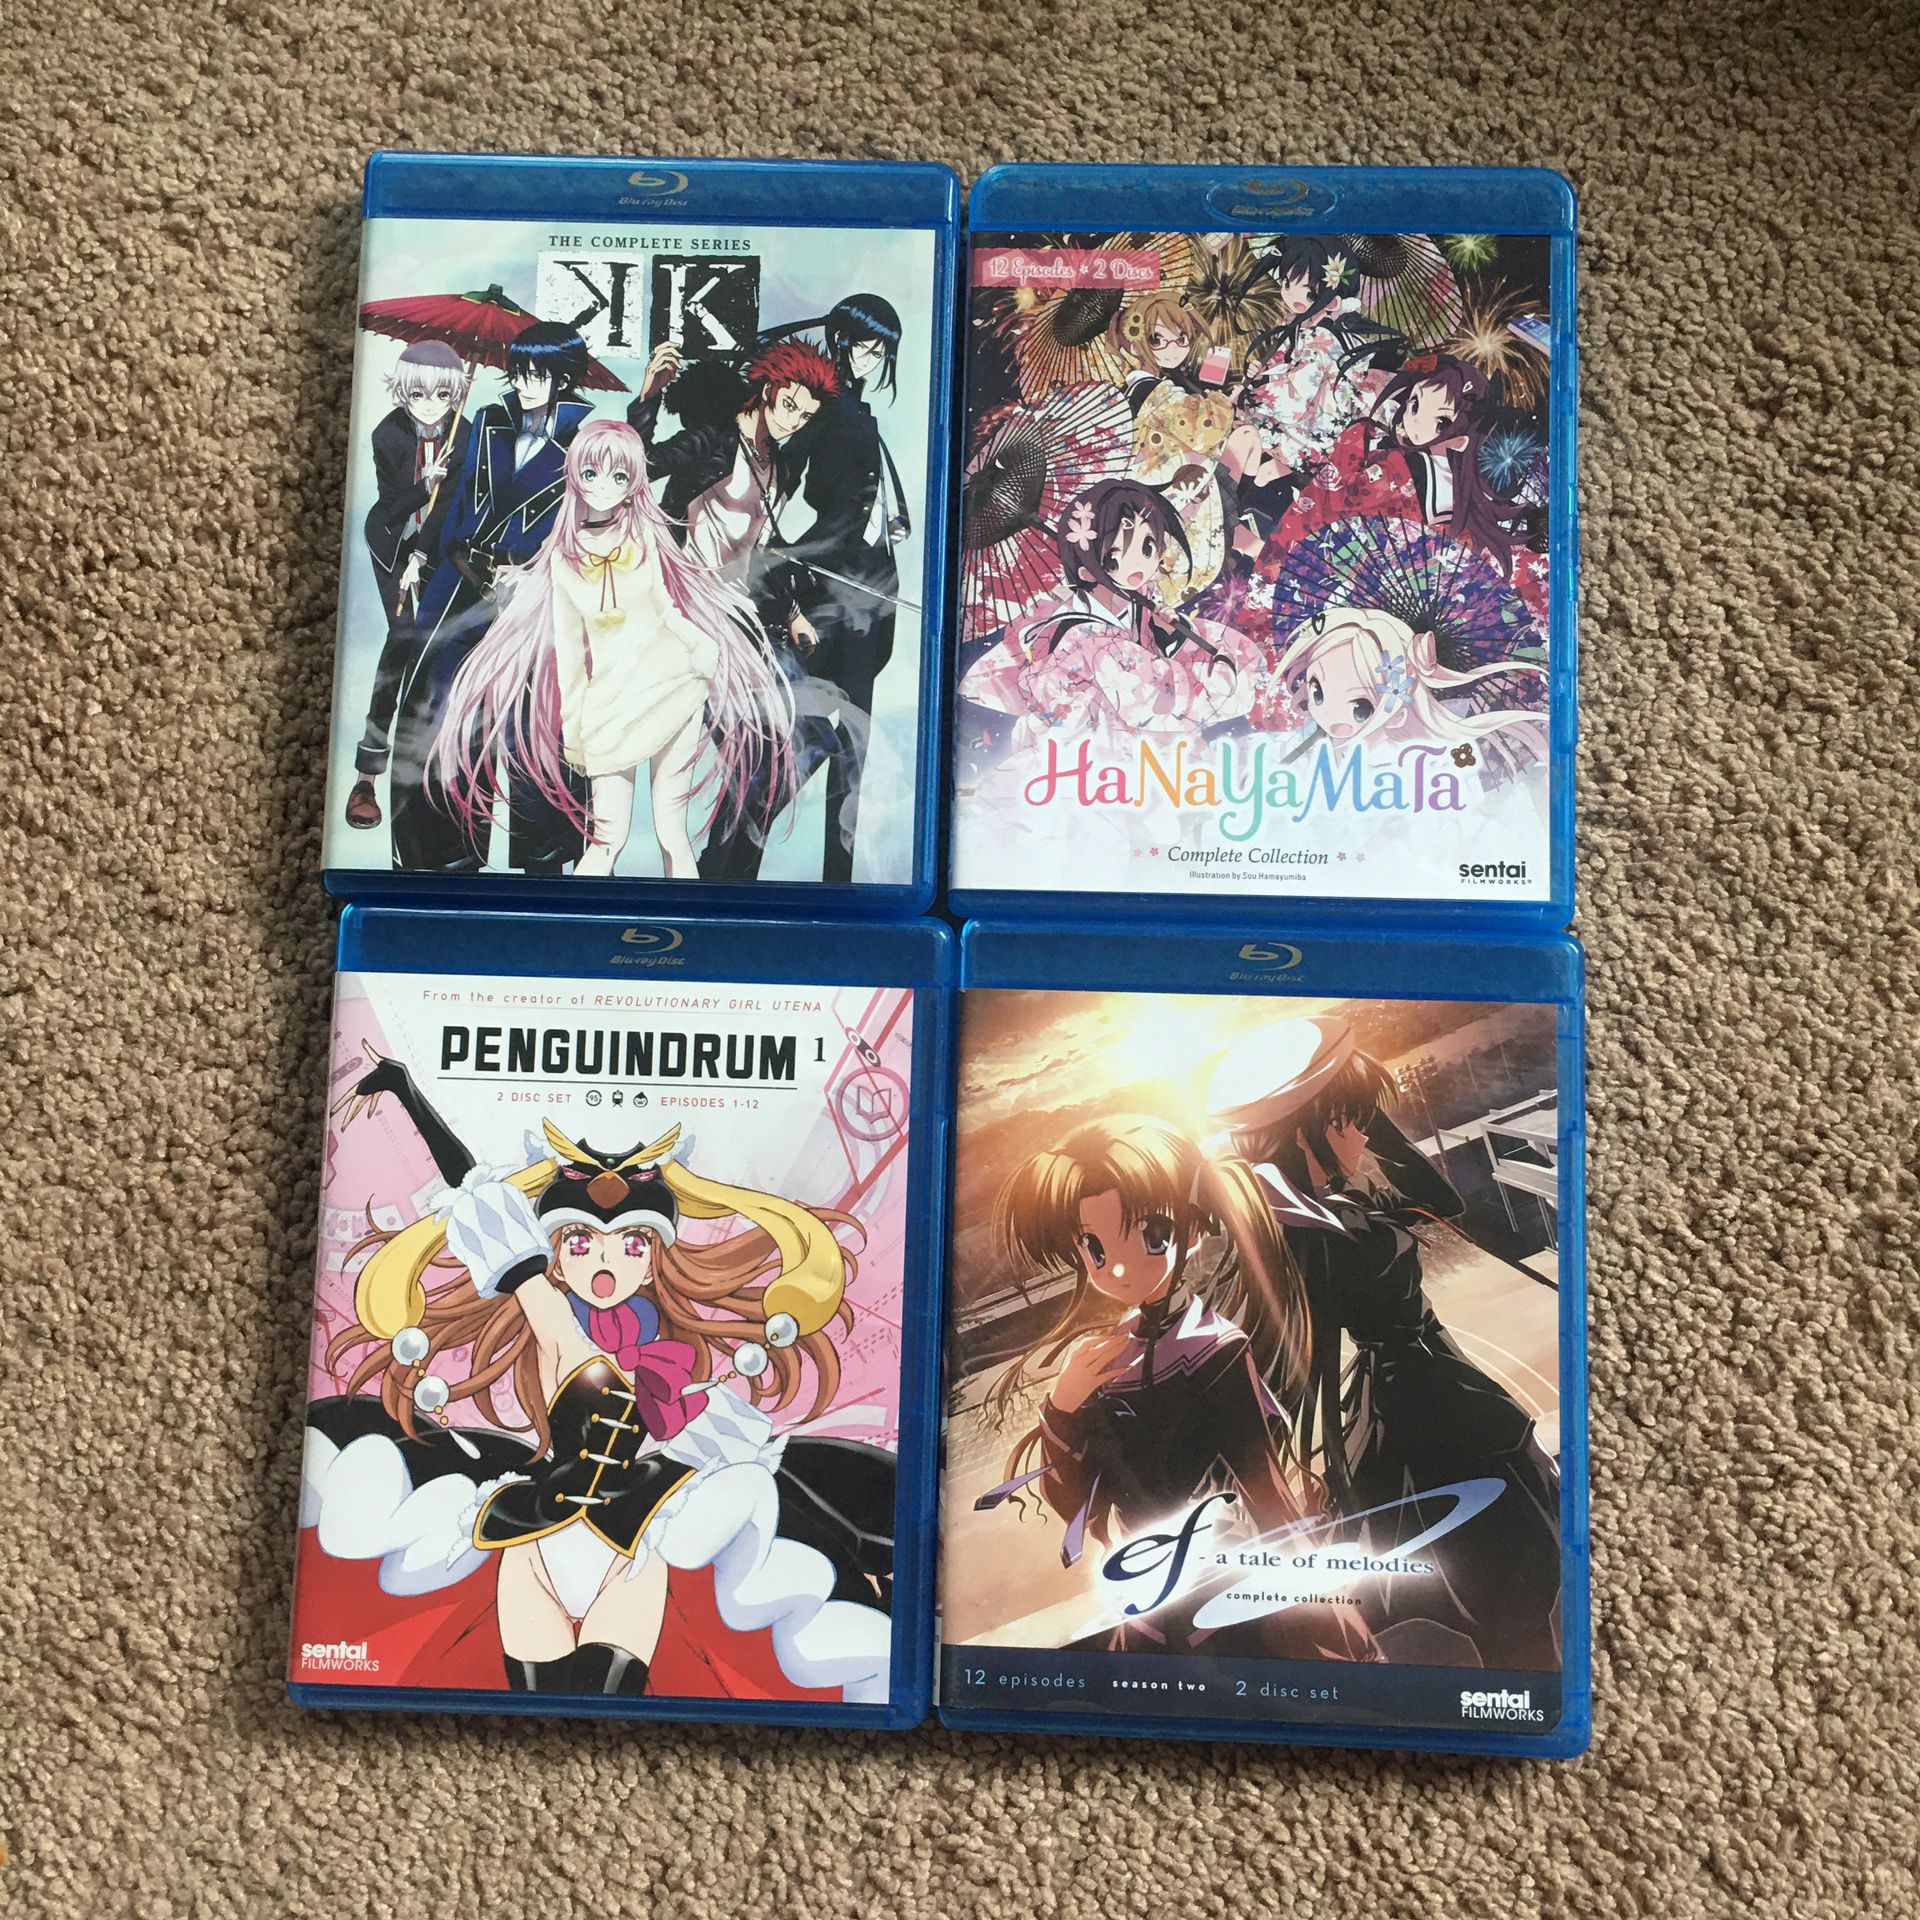 Bundle of 4 Anime Blu-Ray dvd movies